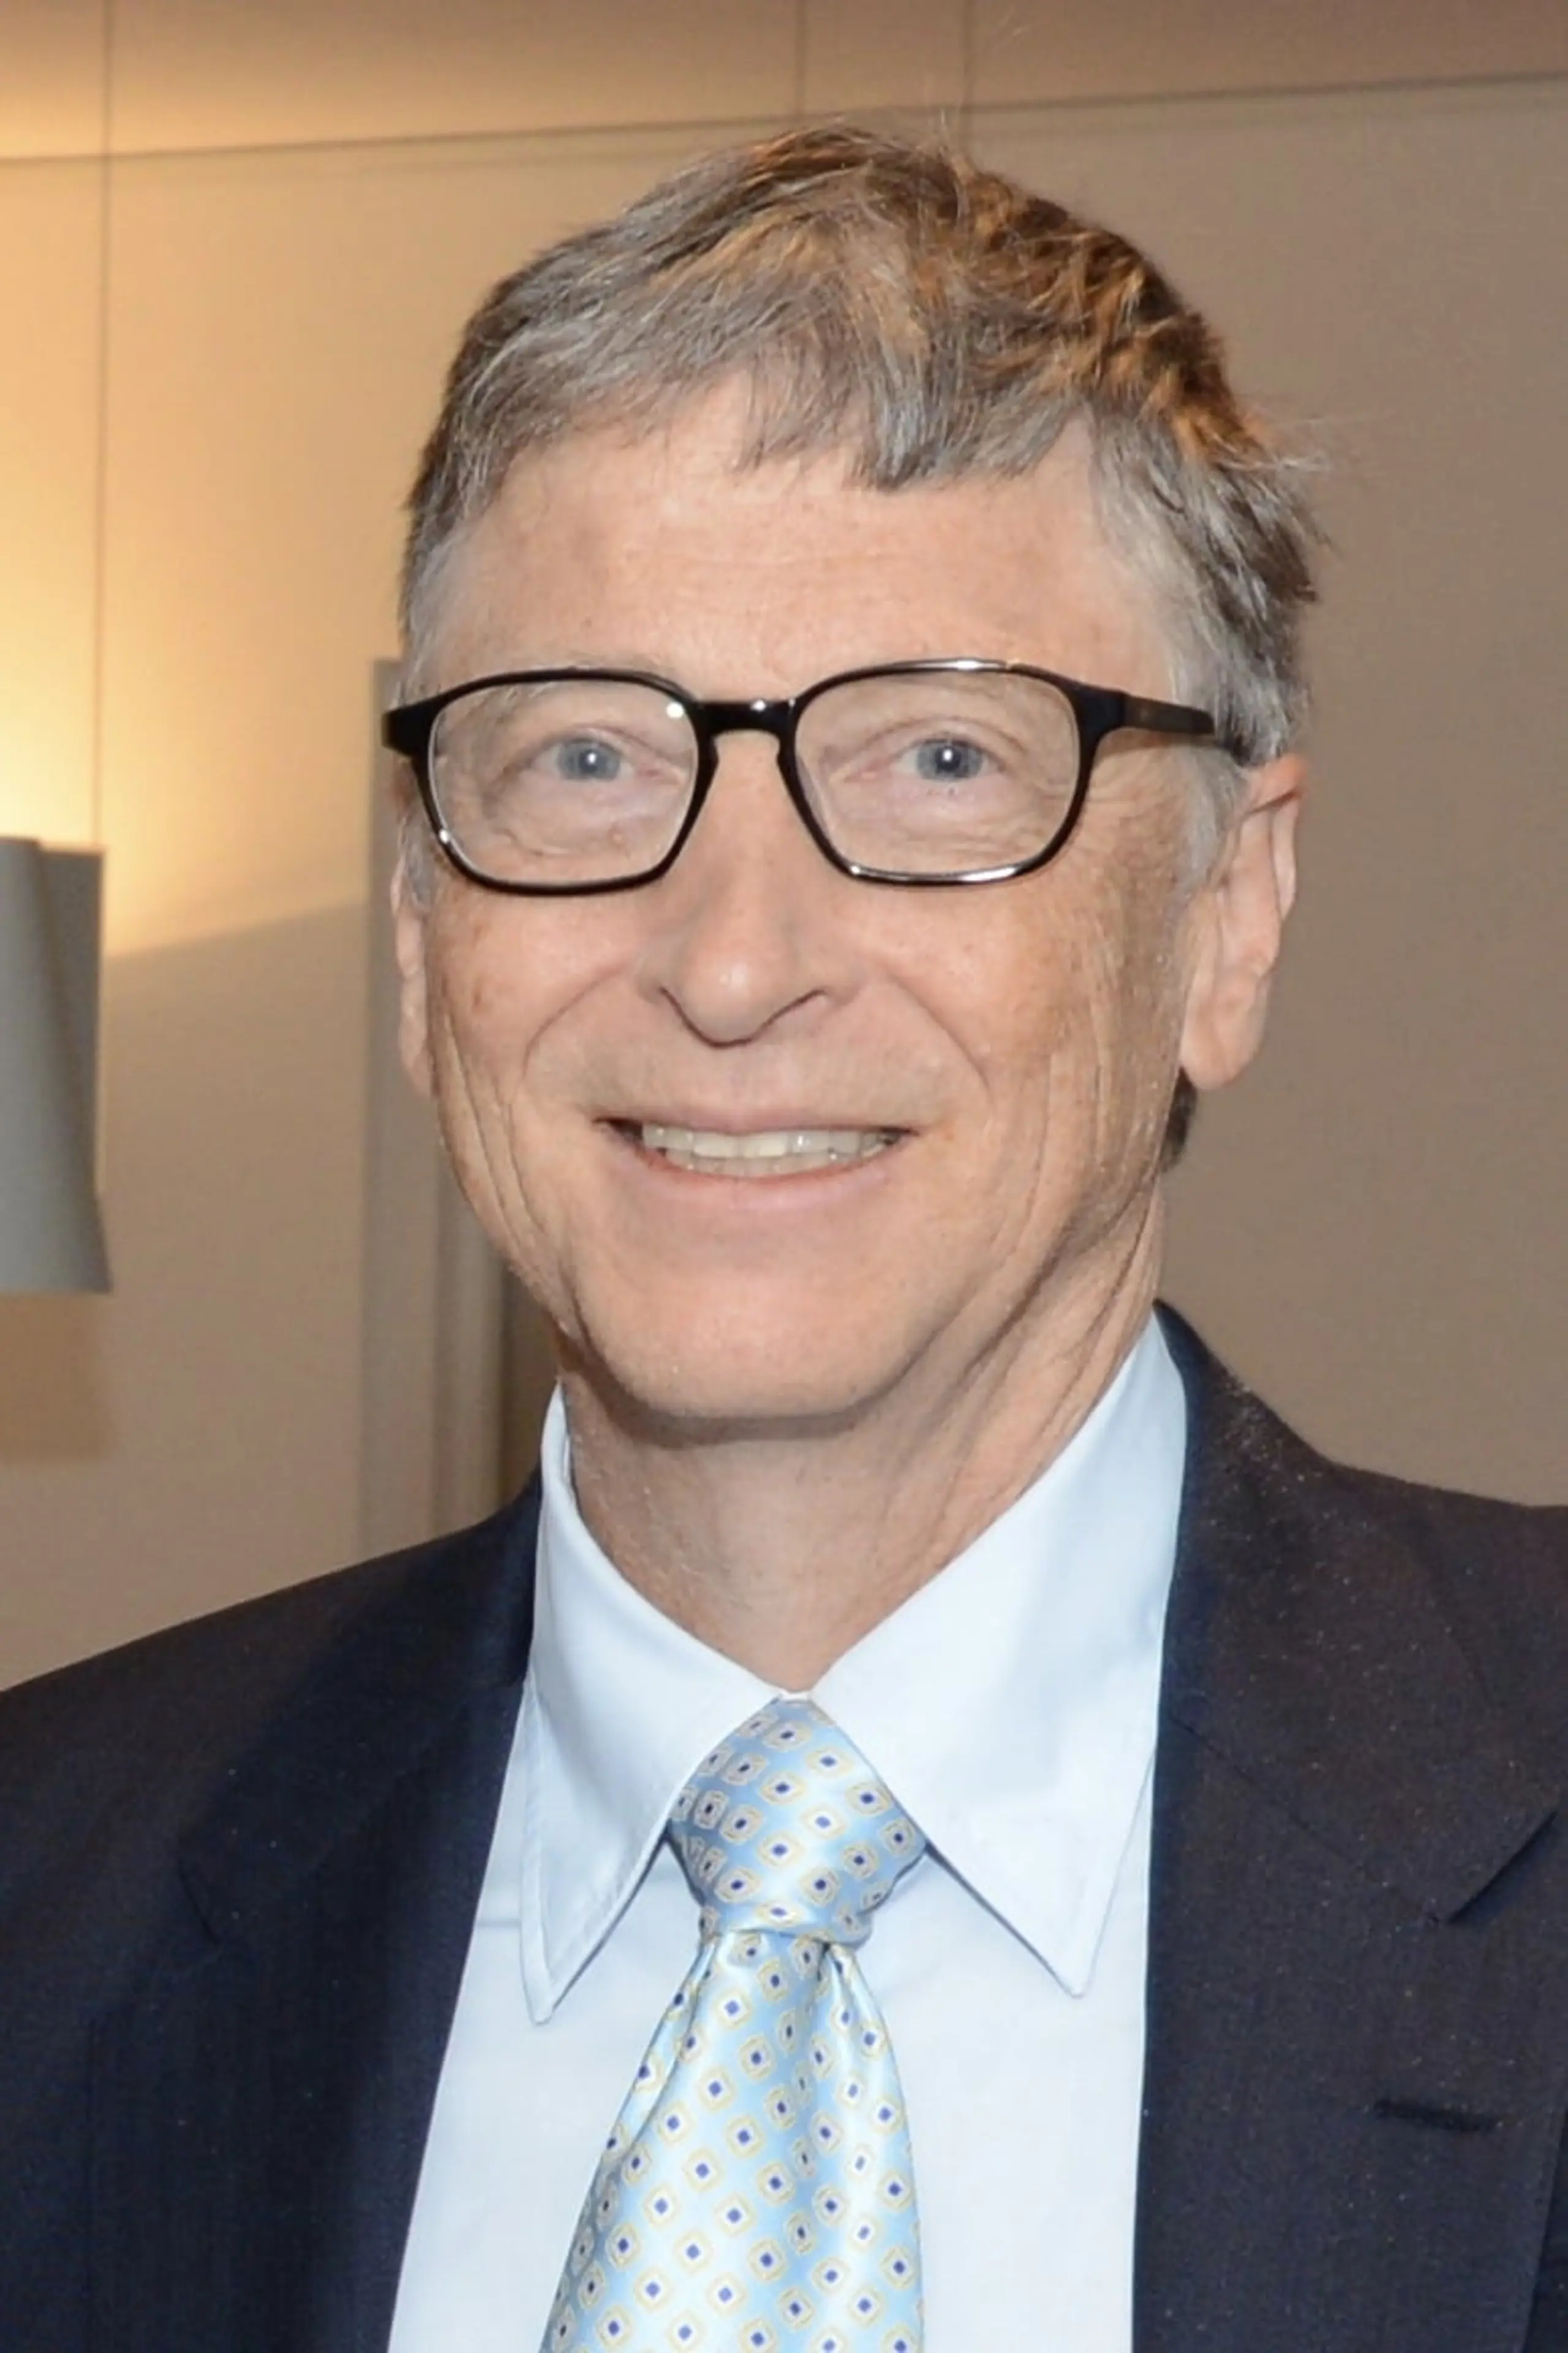 Foto von Bill Gates